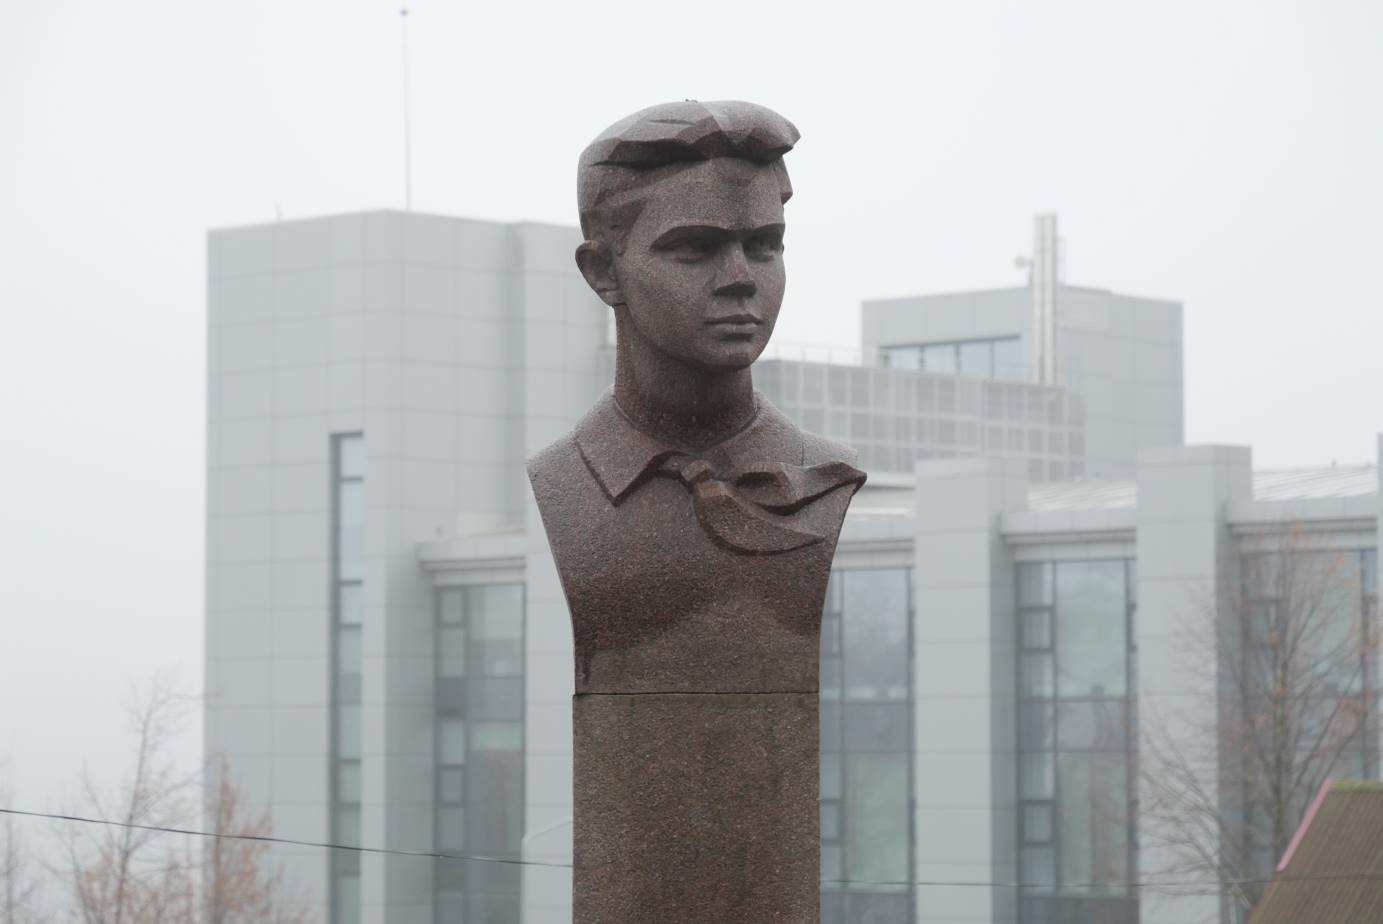 Пам’ятник Володі Дубініну – юному піонеру, герою Керченського партизанського підпілля в роки Другої світової війни